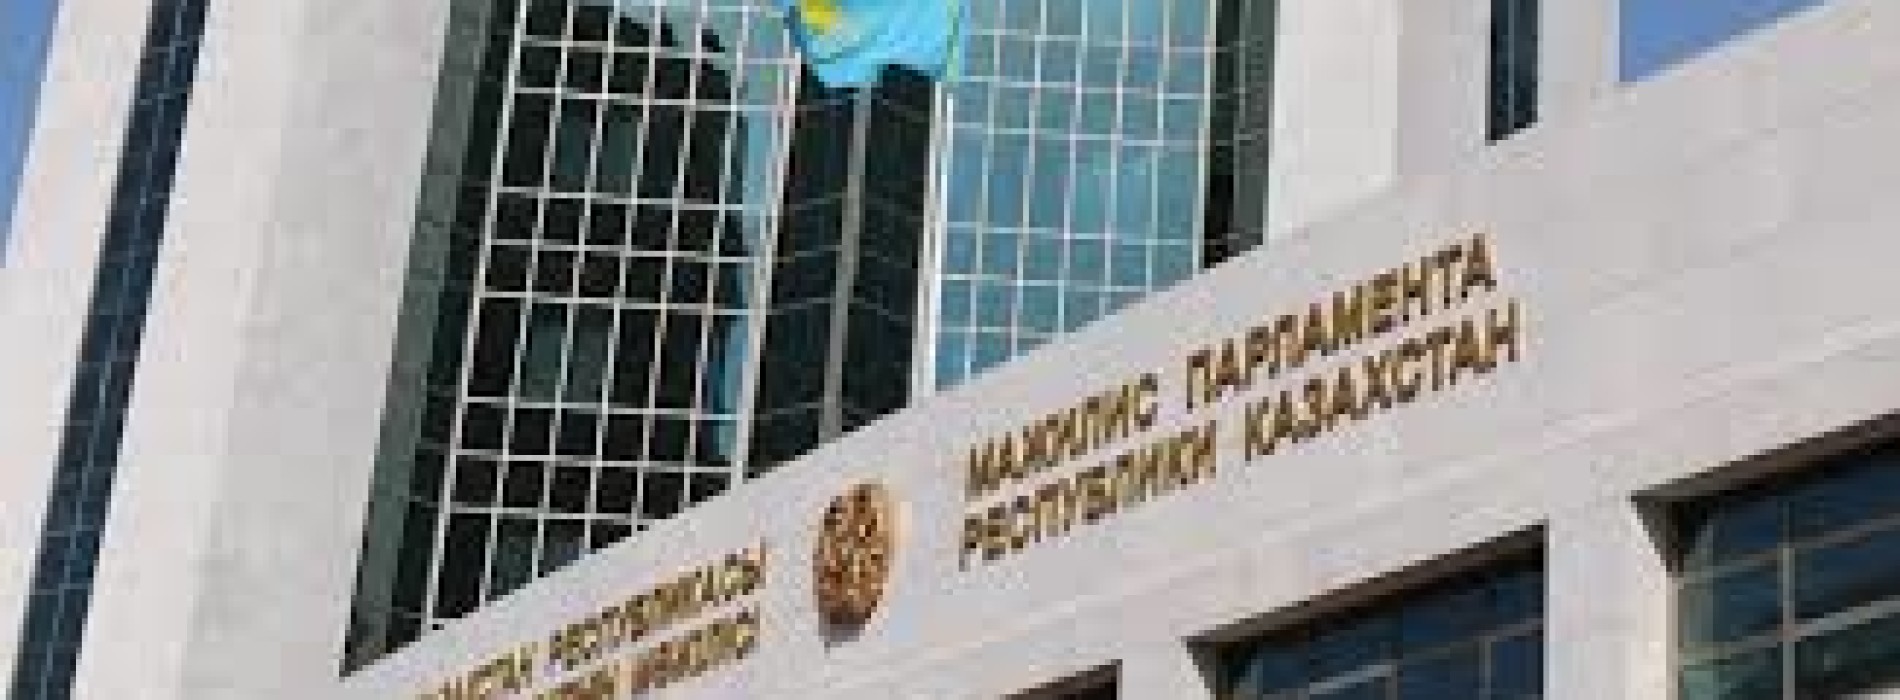 Нурсултан Назарбаев: «В 2016 году ряд законов был принят некачественно»   